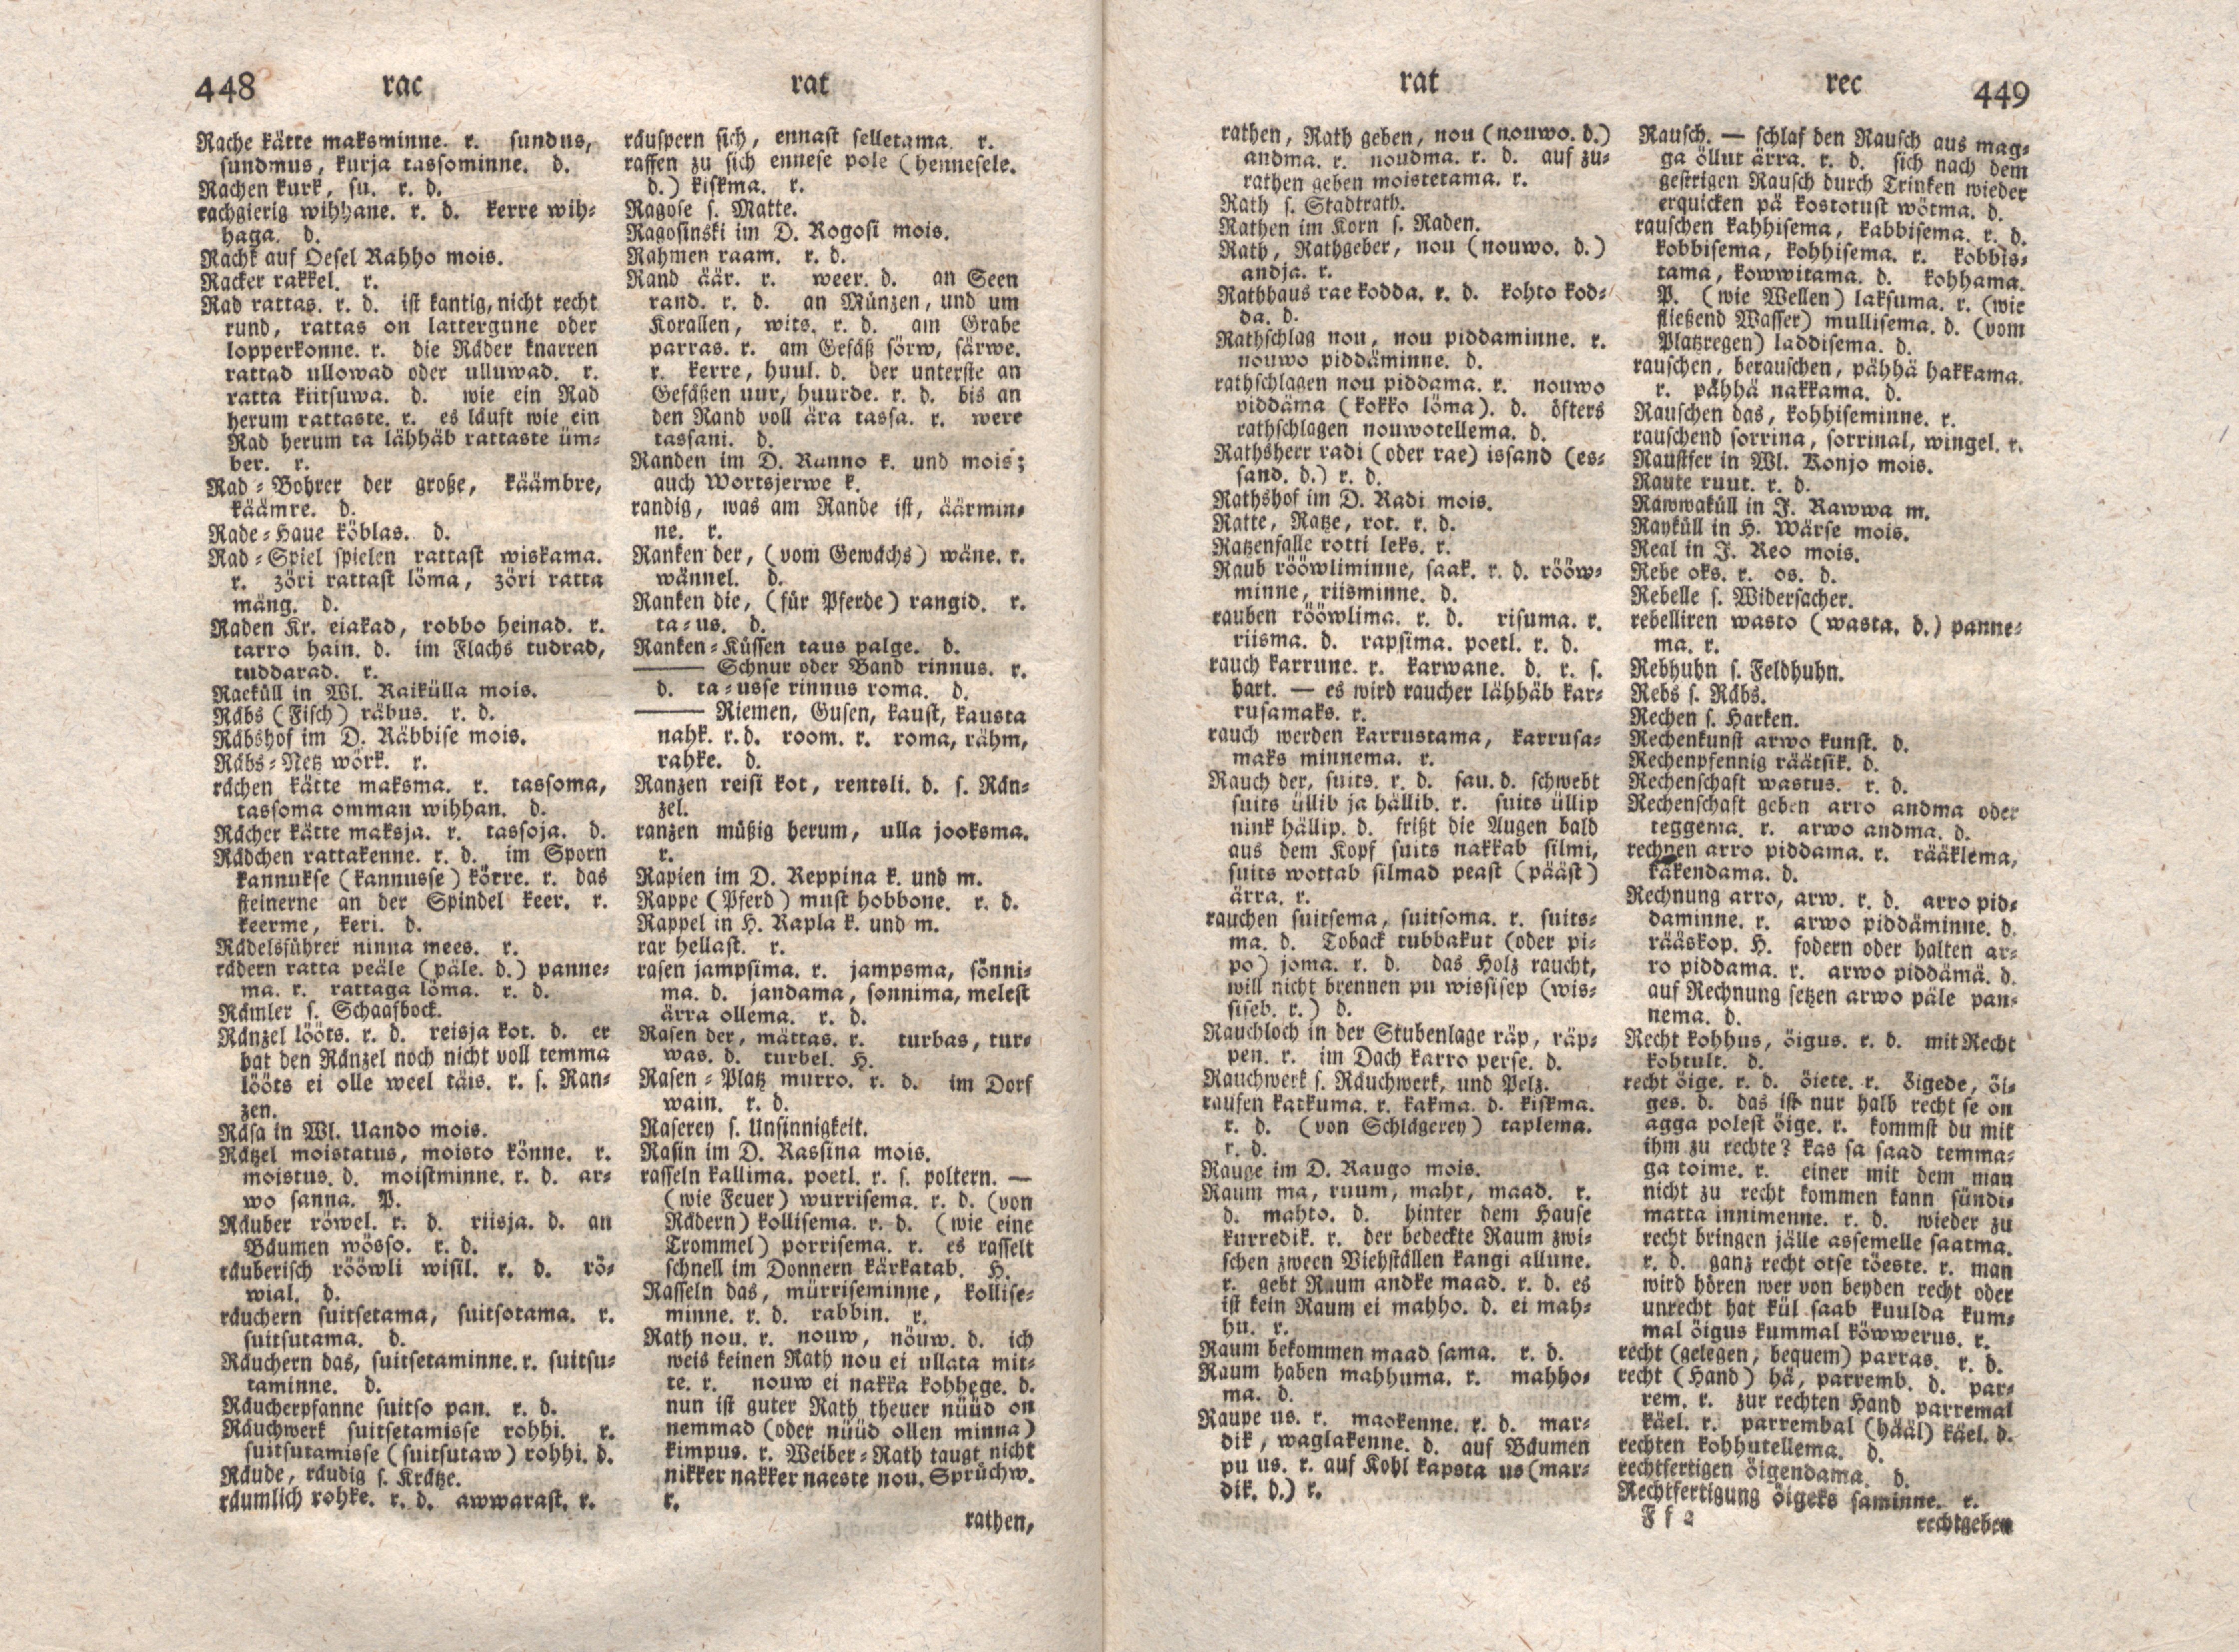 Ehstnische Sprachlehre für beide Hauptdialekte (1780) | 235. (448-449) Main body of text